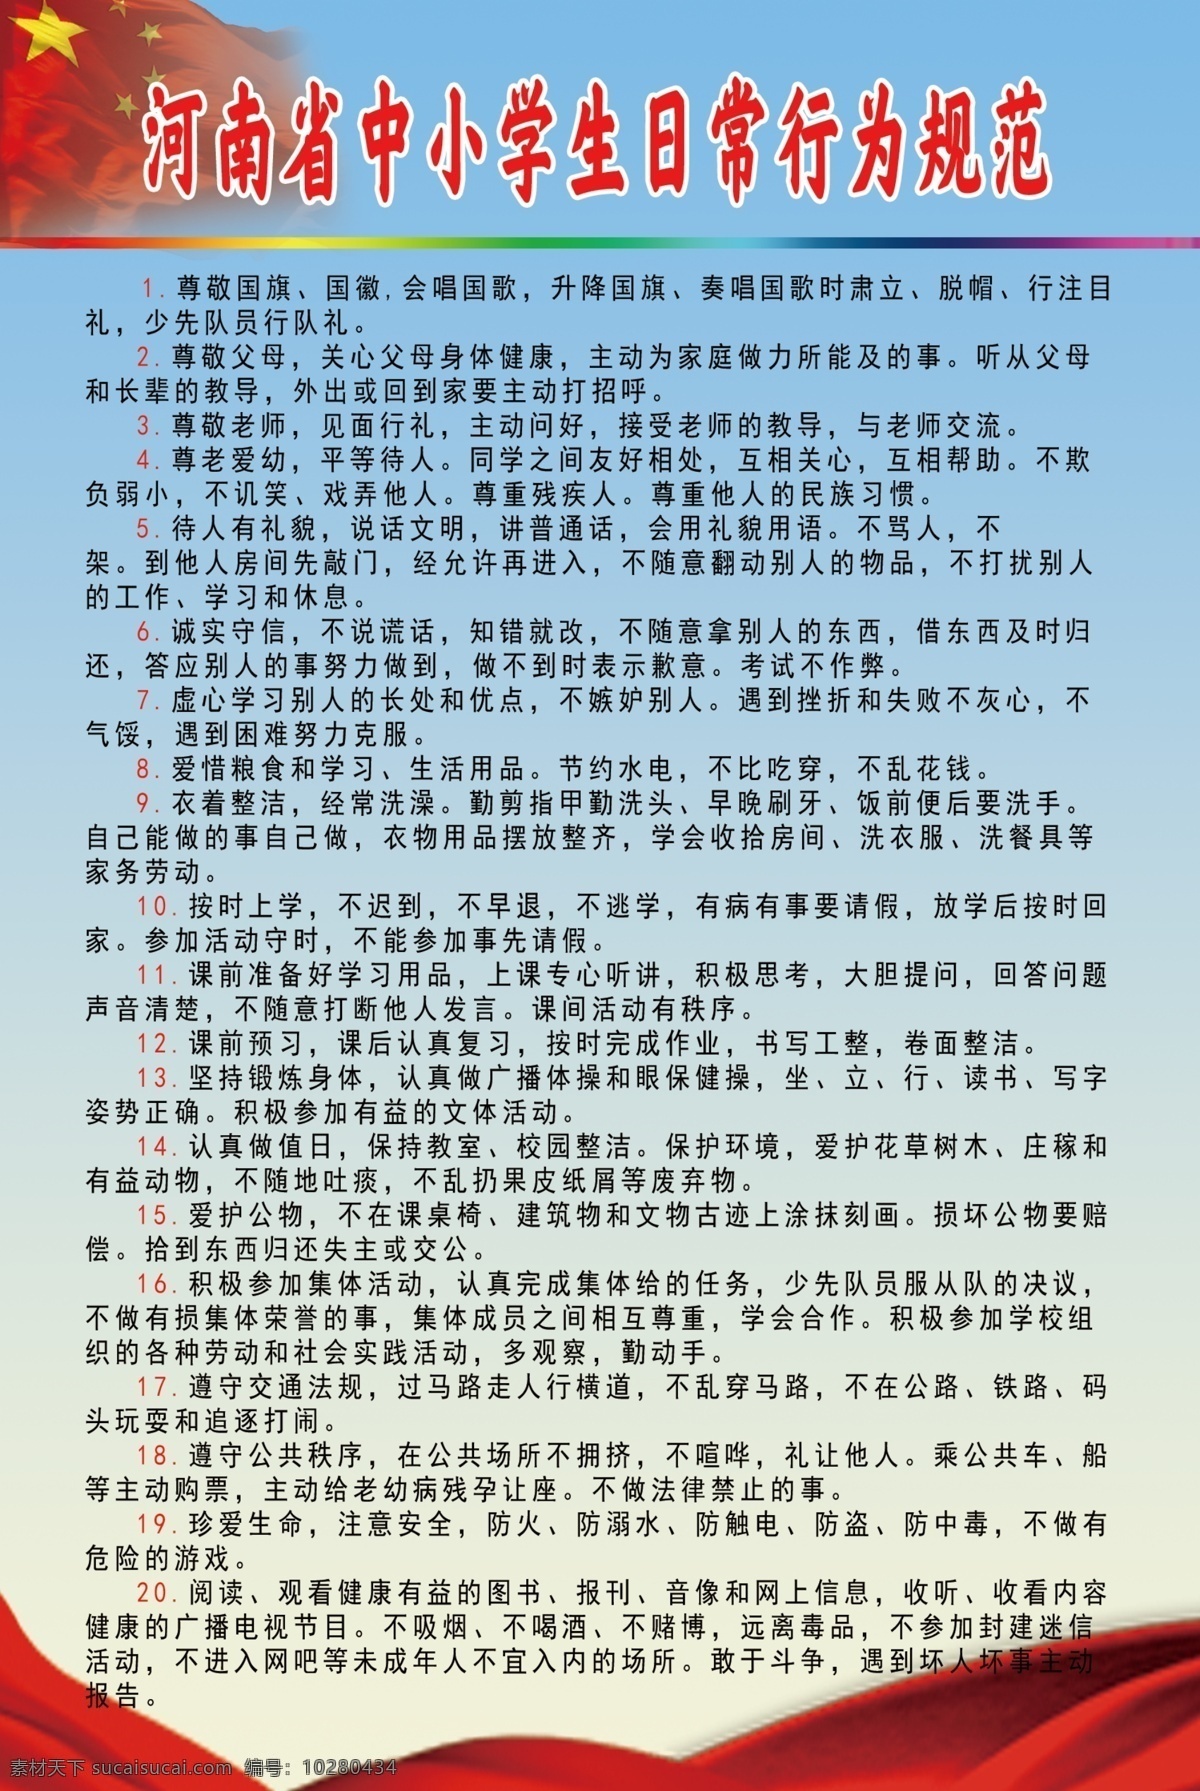 河南省 中小学生 日常 行为规范 ps 行为 规范 2020 最新版 行为守则 简洁 分层